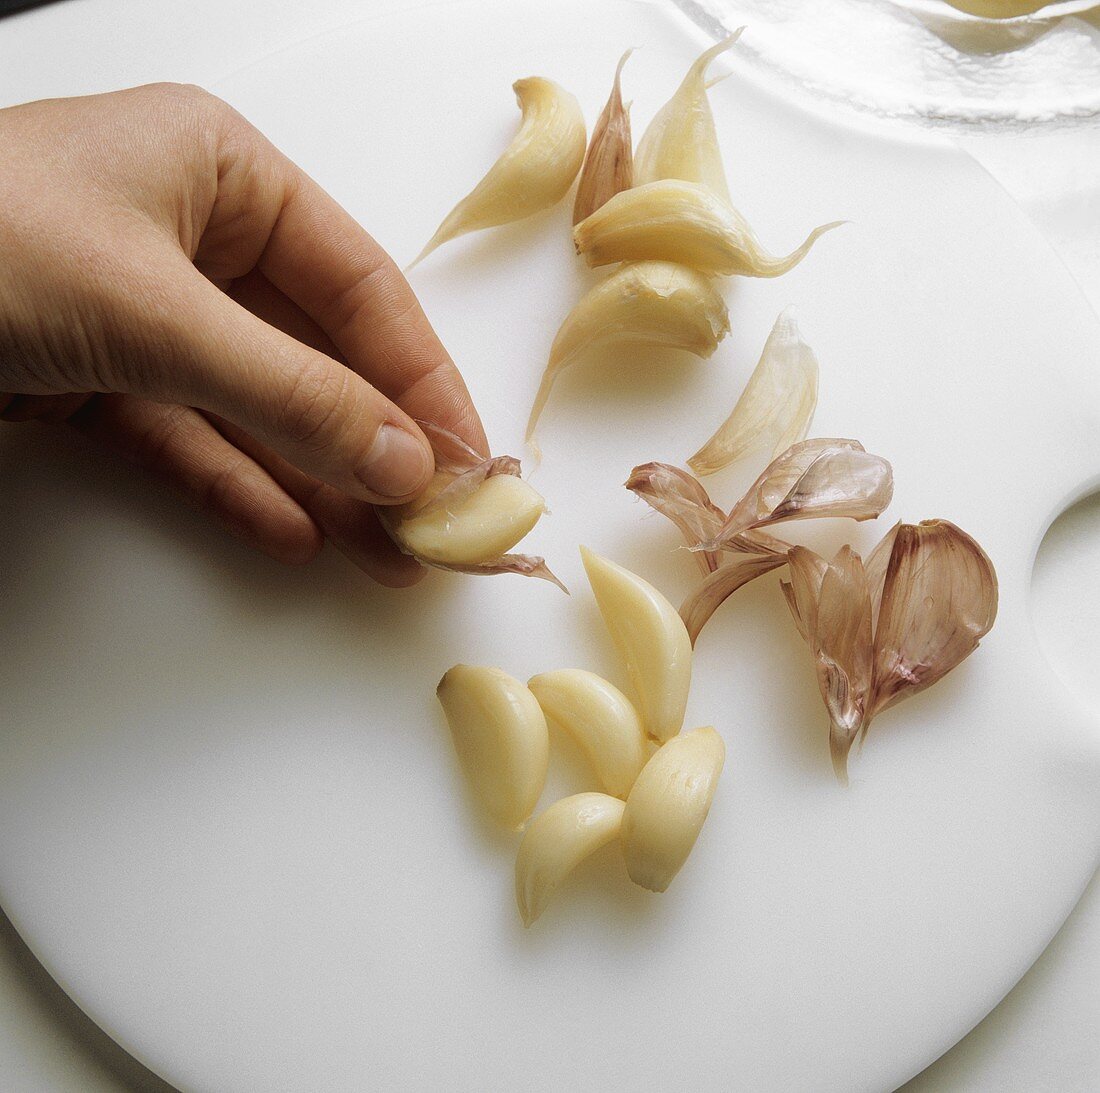 Peeling cloves of garlic